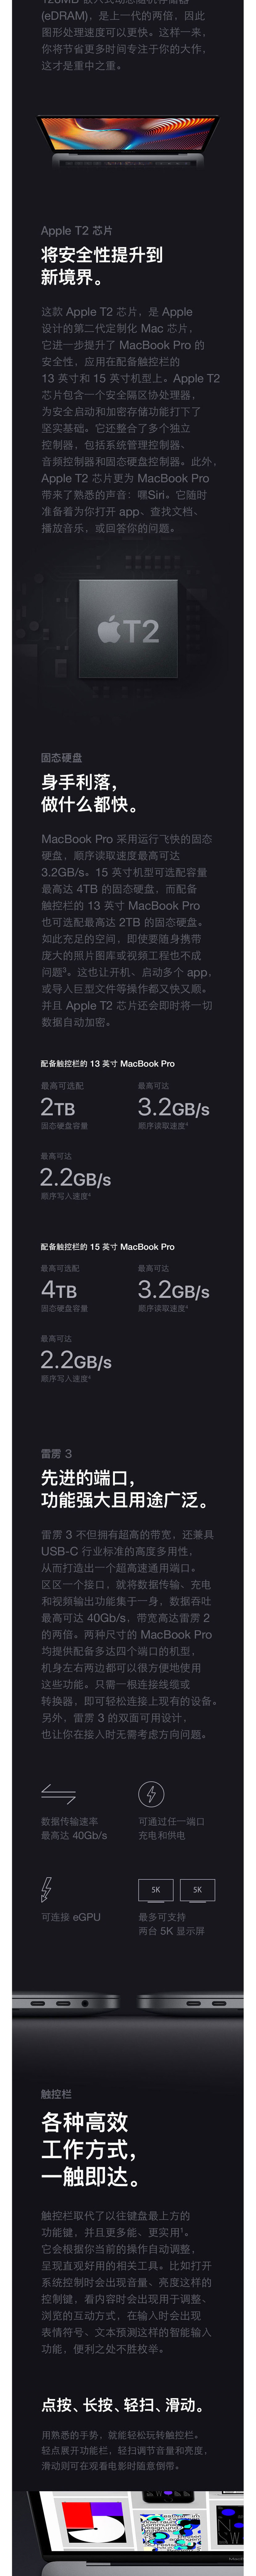 2018新款 Apple MacBook Pro 15.4英寸笔记本电脑  256G固态硬盘